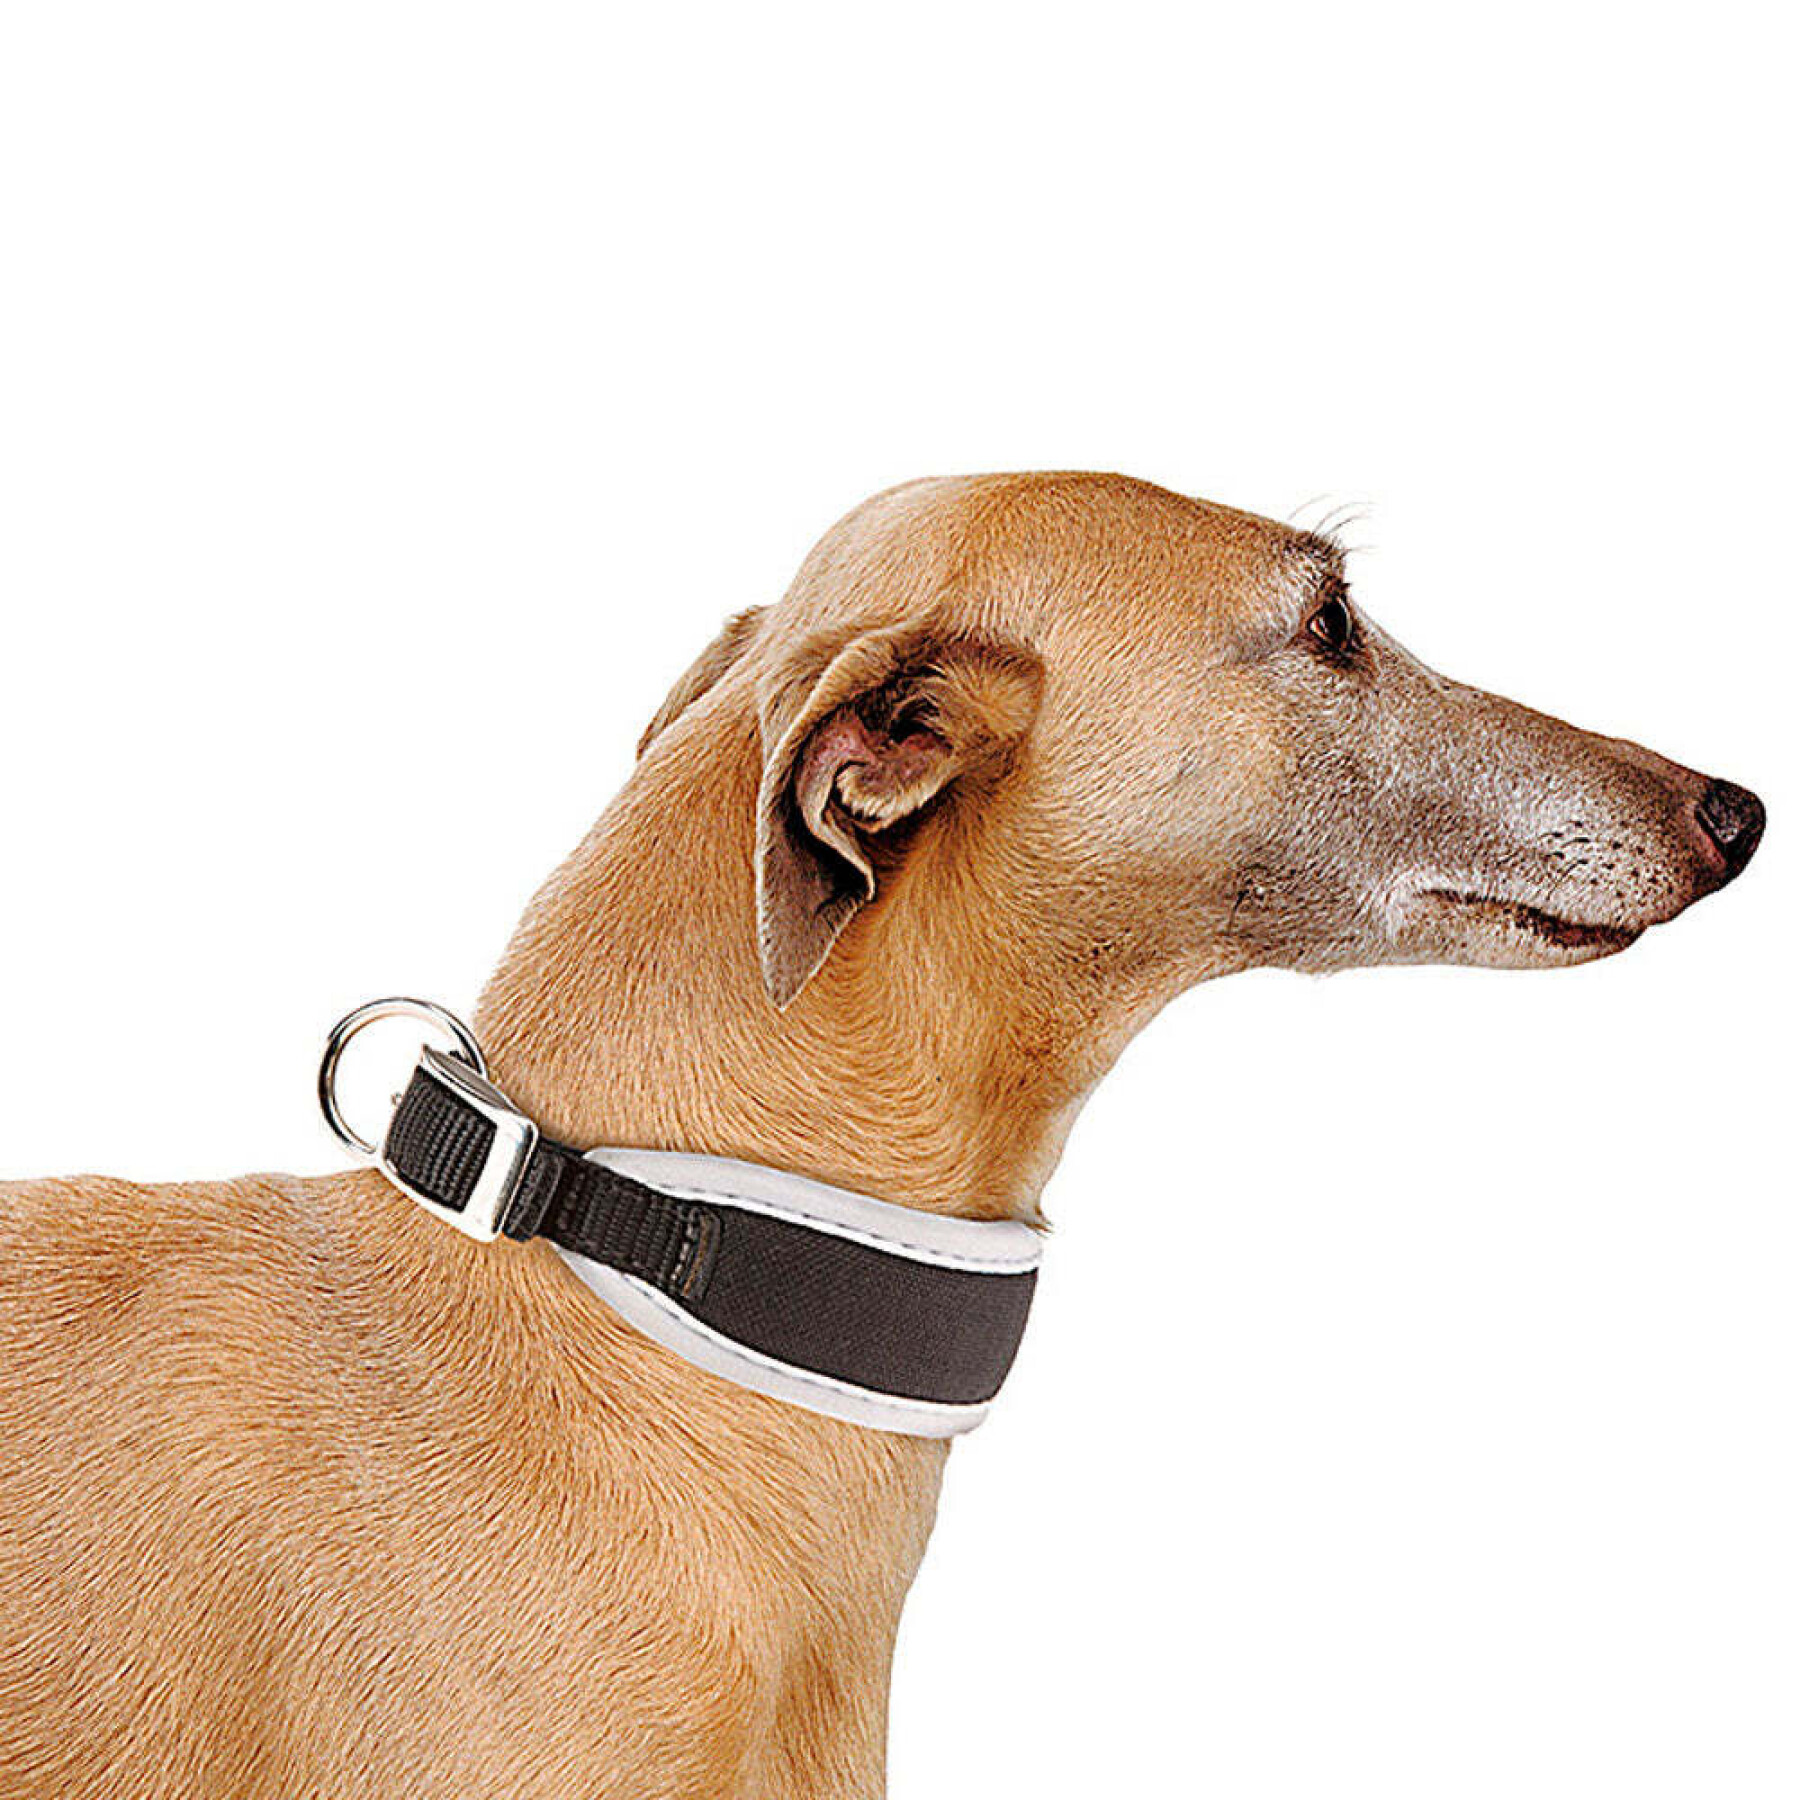 Collar para perro Ferplast Ergocomfort CW15/32